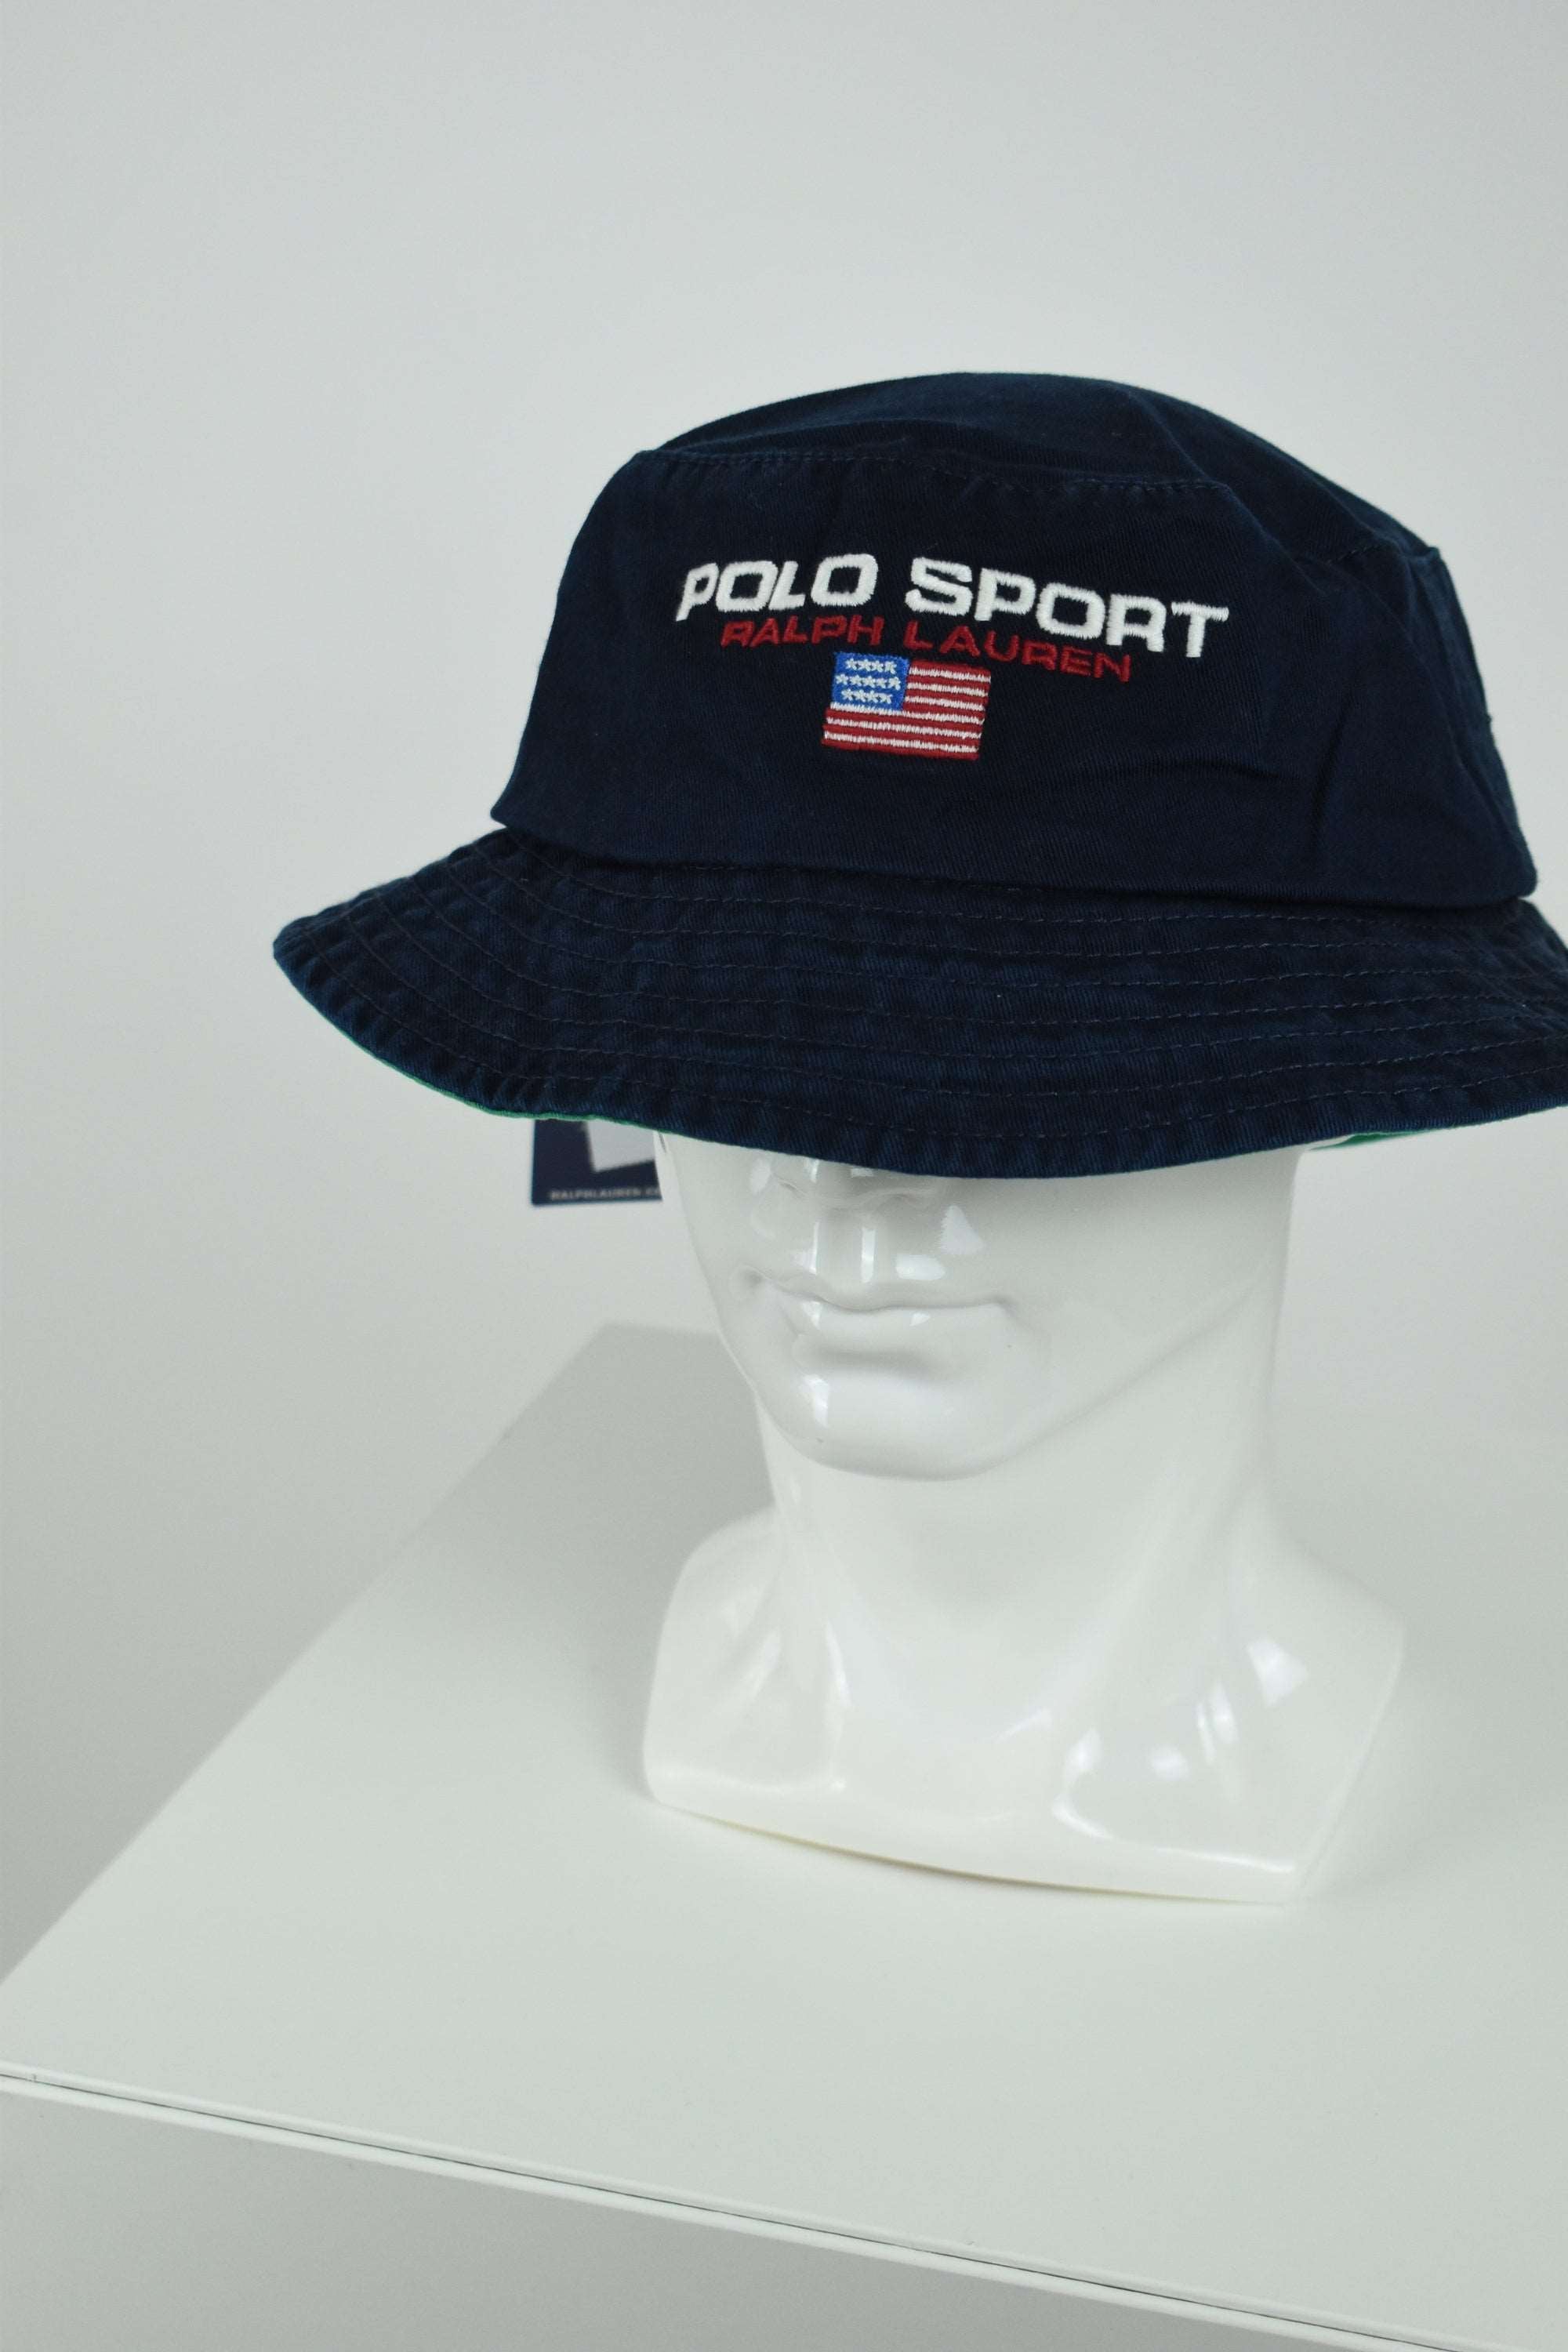 New Ralph Lauren Polo Sport  Bucket Hat Navy/Green OS